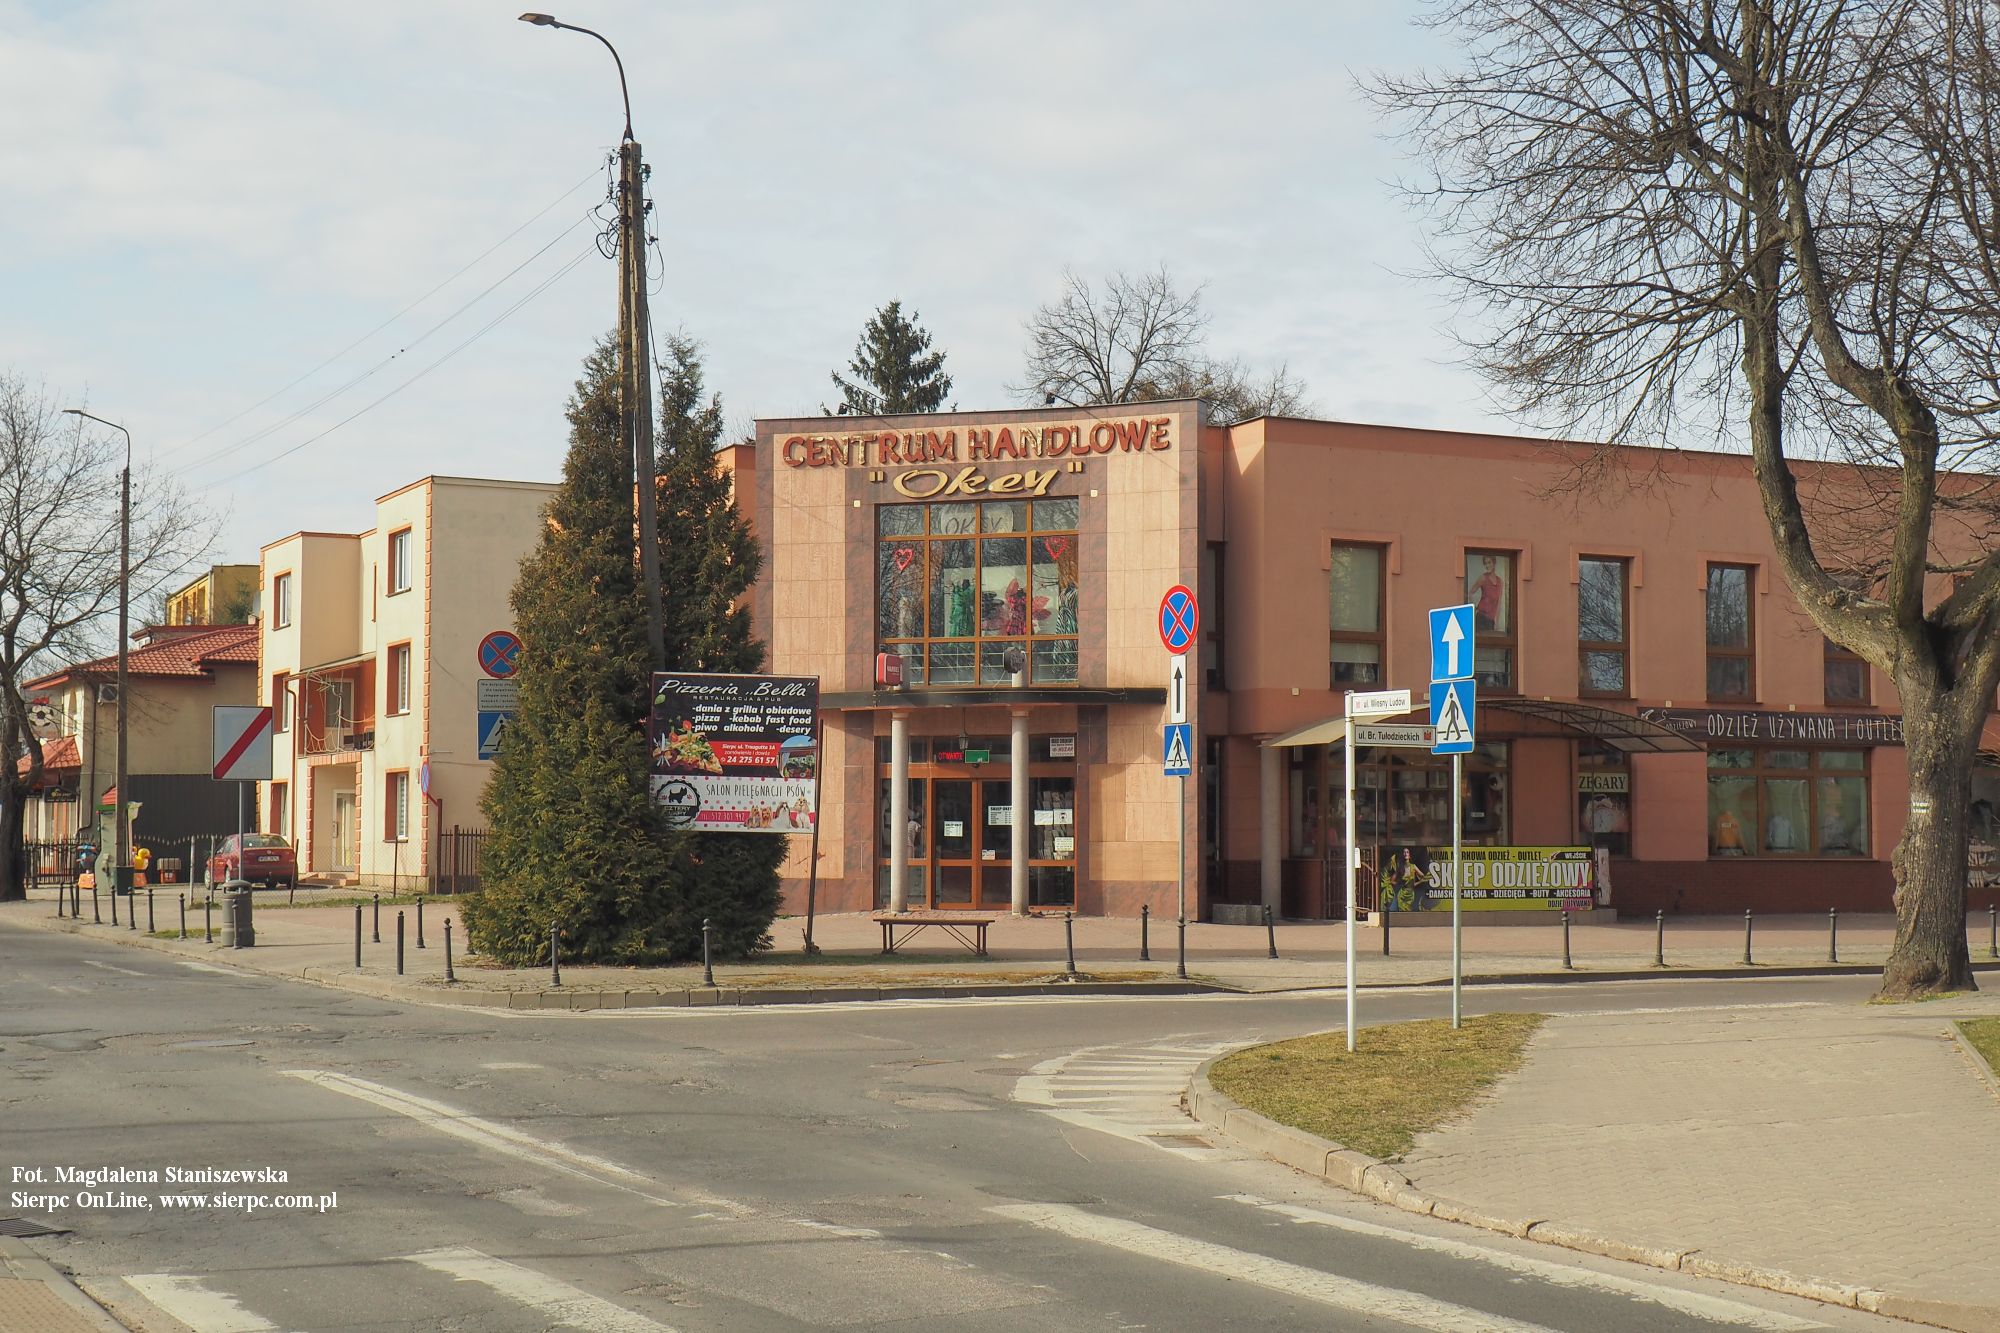 Centrum handlowe Okey przy ulicy Wiosny Ludw, 27.03.2022 r.